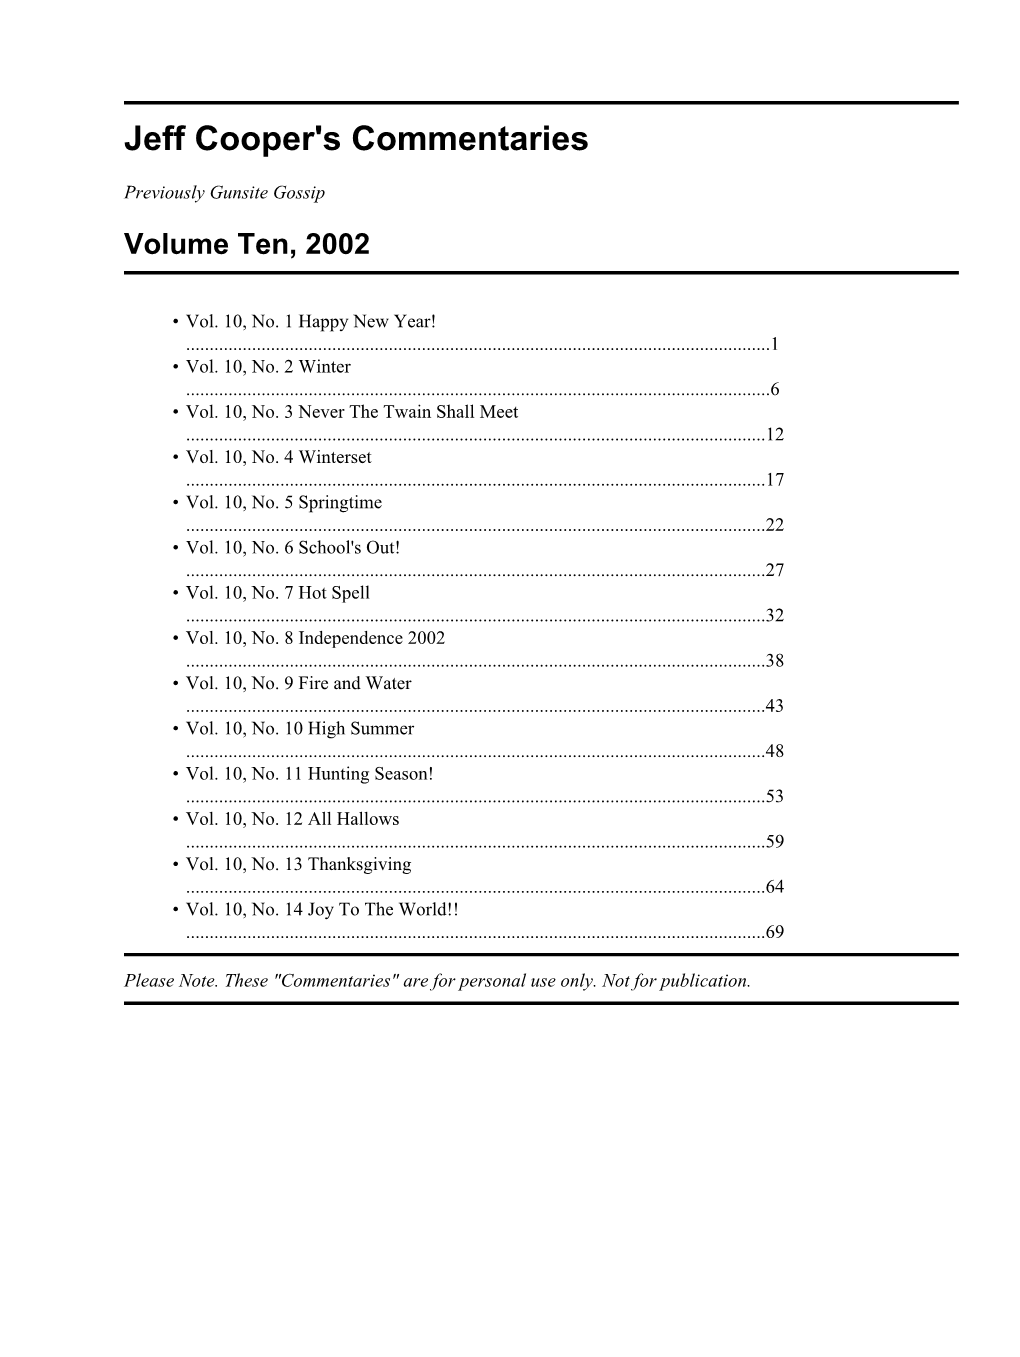 Jeff Cooper's Commentaries, Volume Ten, 2002